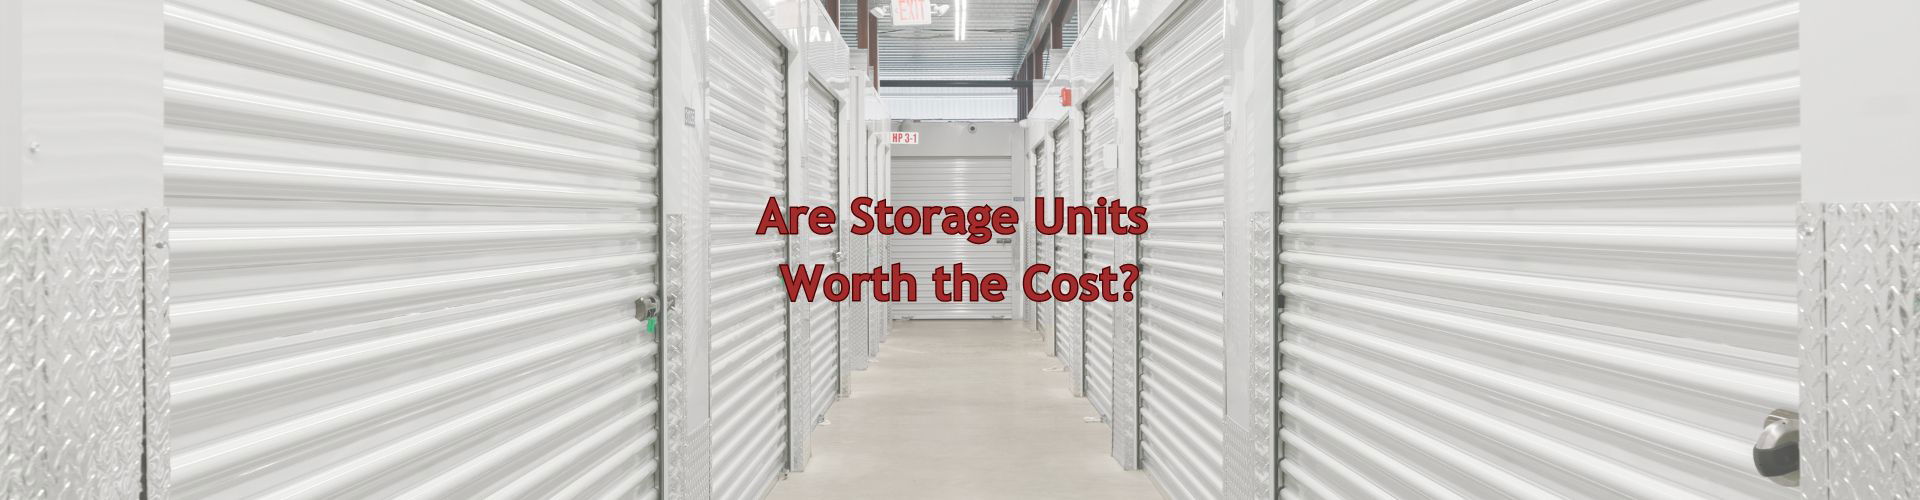 storage cost